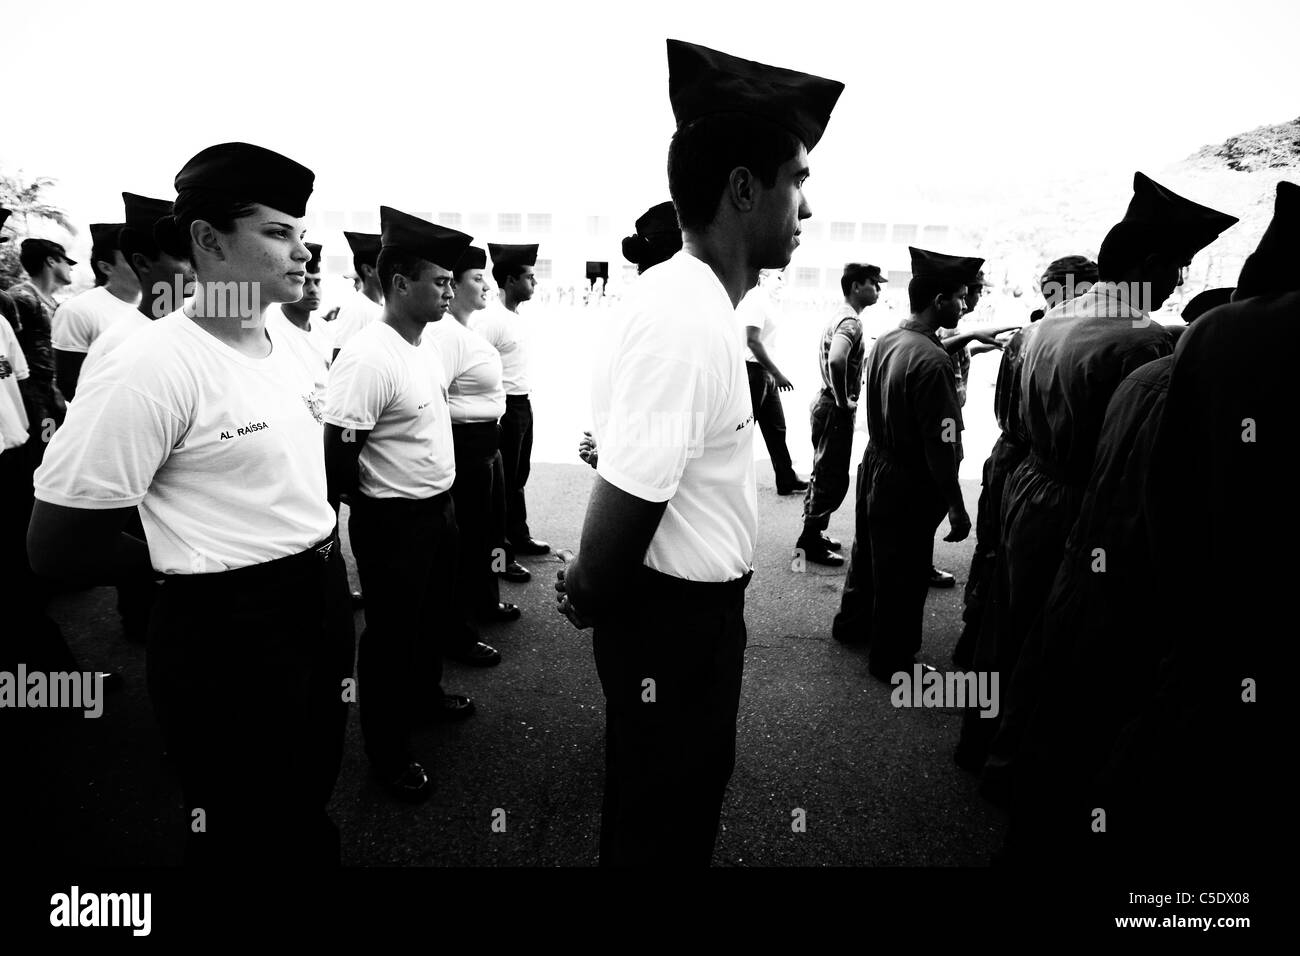 Les cadets se tenant dans la ligne au cours de perceuse à air force school à guaratingueta, Brésil Banque D'Images